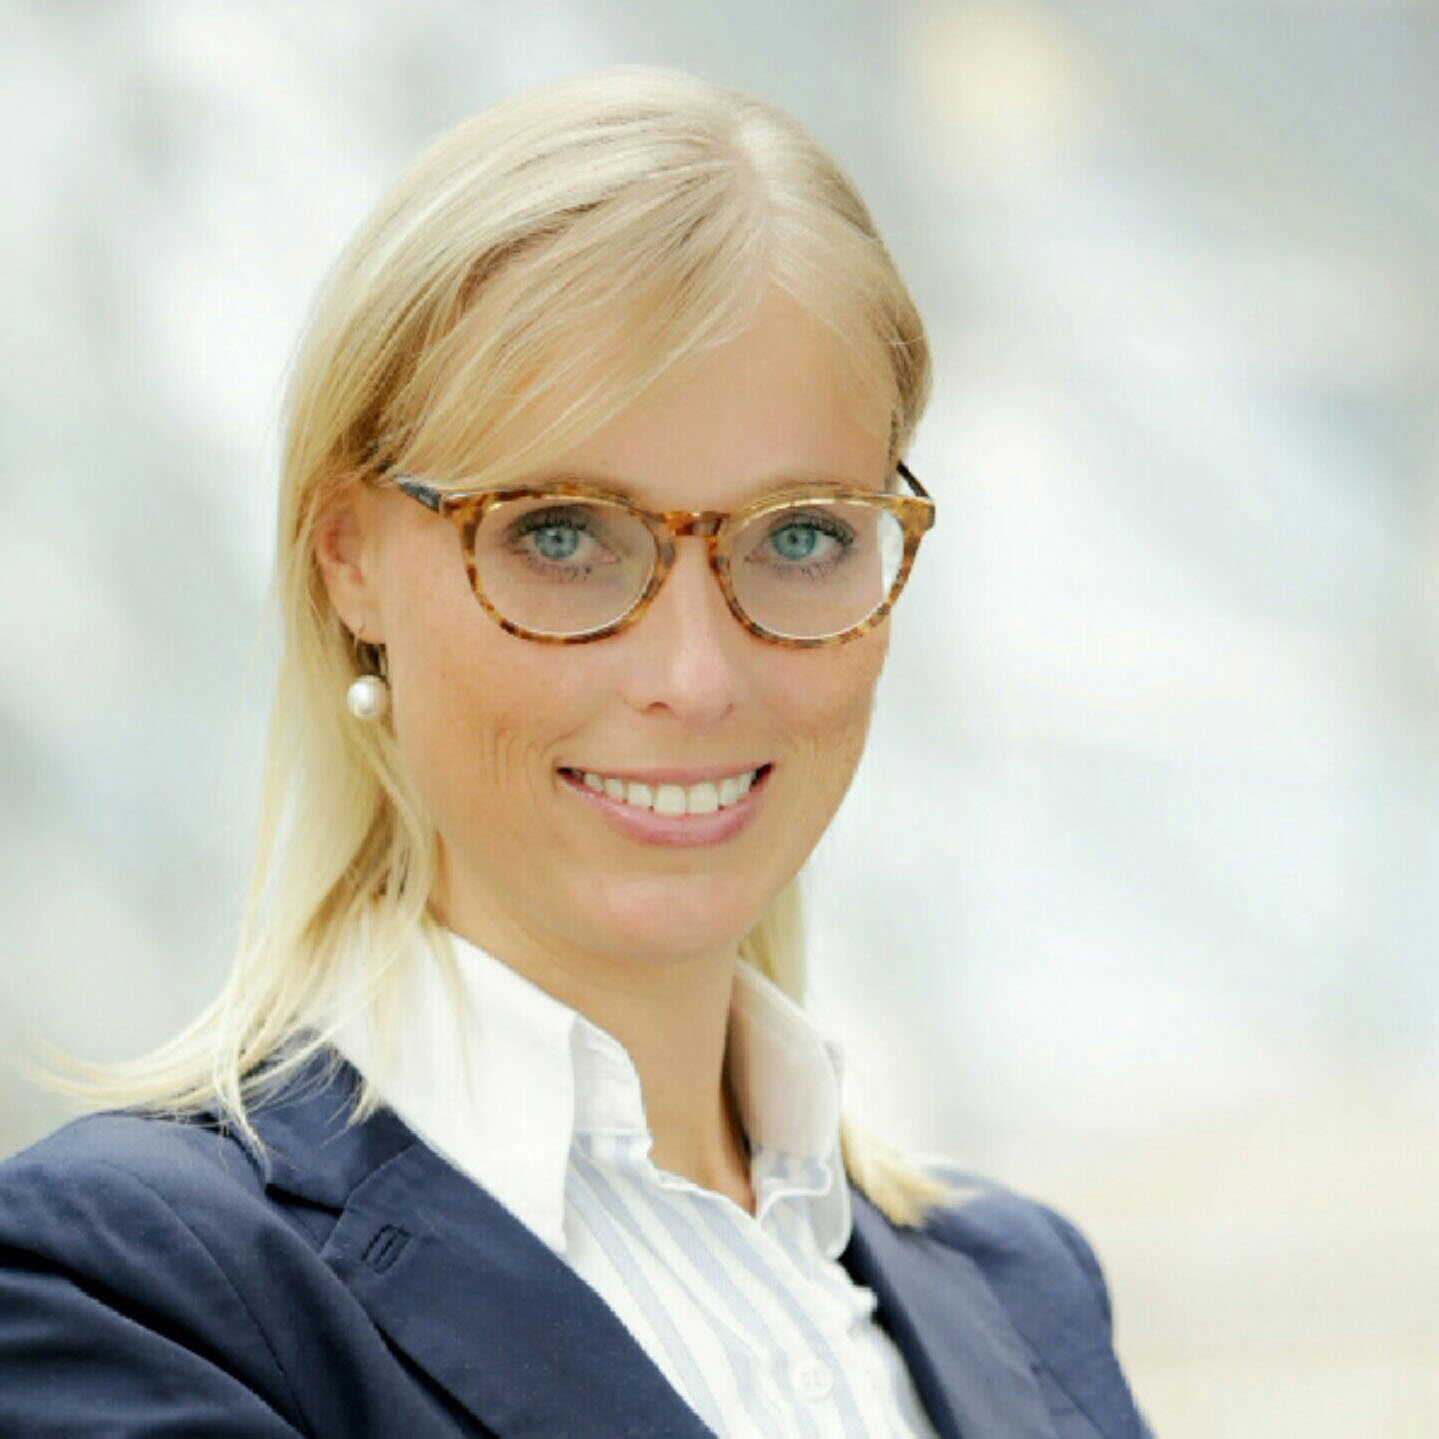 Emily Sidka, Head of Marketing